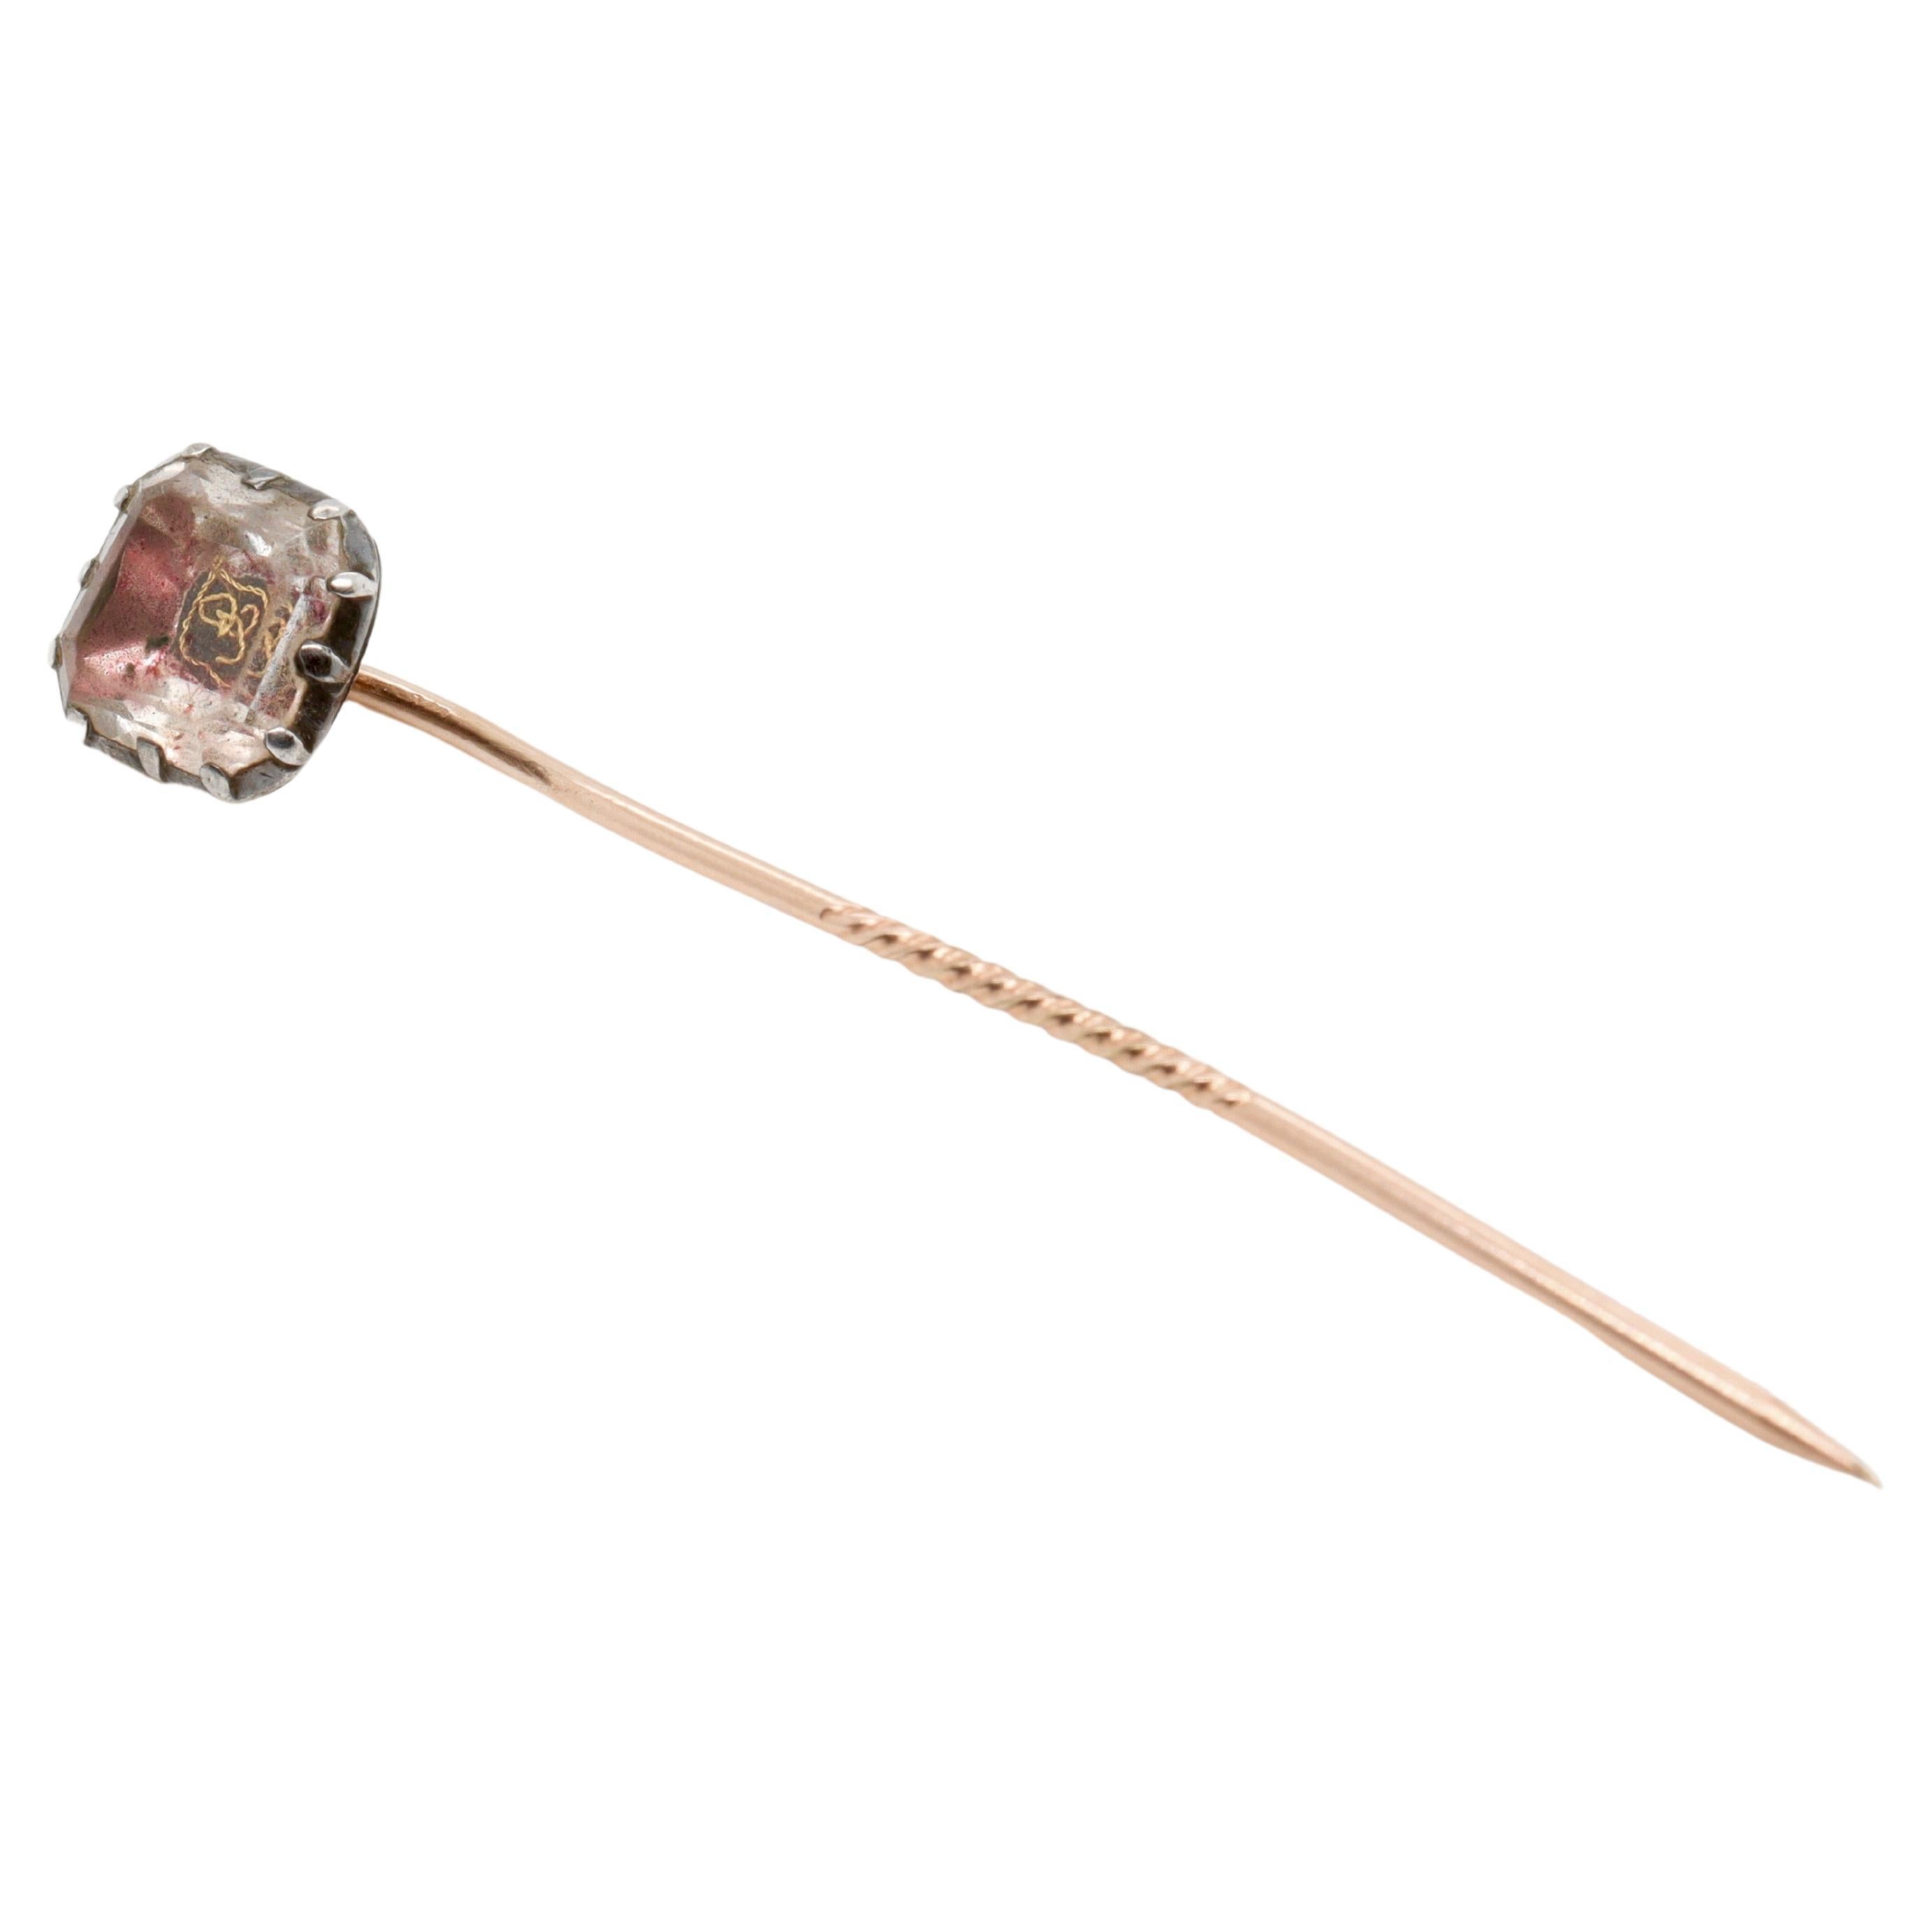 Ein feiner antiker Stuart Crystal Stick Pin.

Mit einem facettierten Bergkristall, Spuren von rosa und roter Folie und einer goldenen Drahtzierde besetzt.

Die Anstecknadel ist wahrscheinlich einem Knopf aus dem frühen 17. oder 18. Jahrhundert